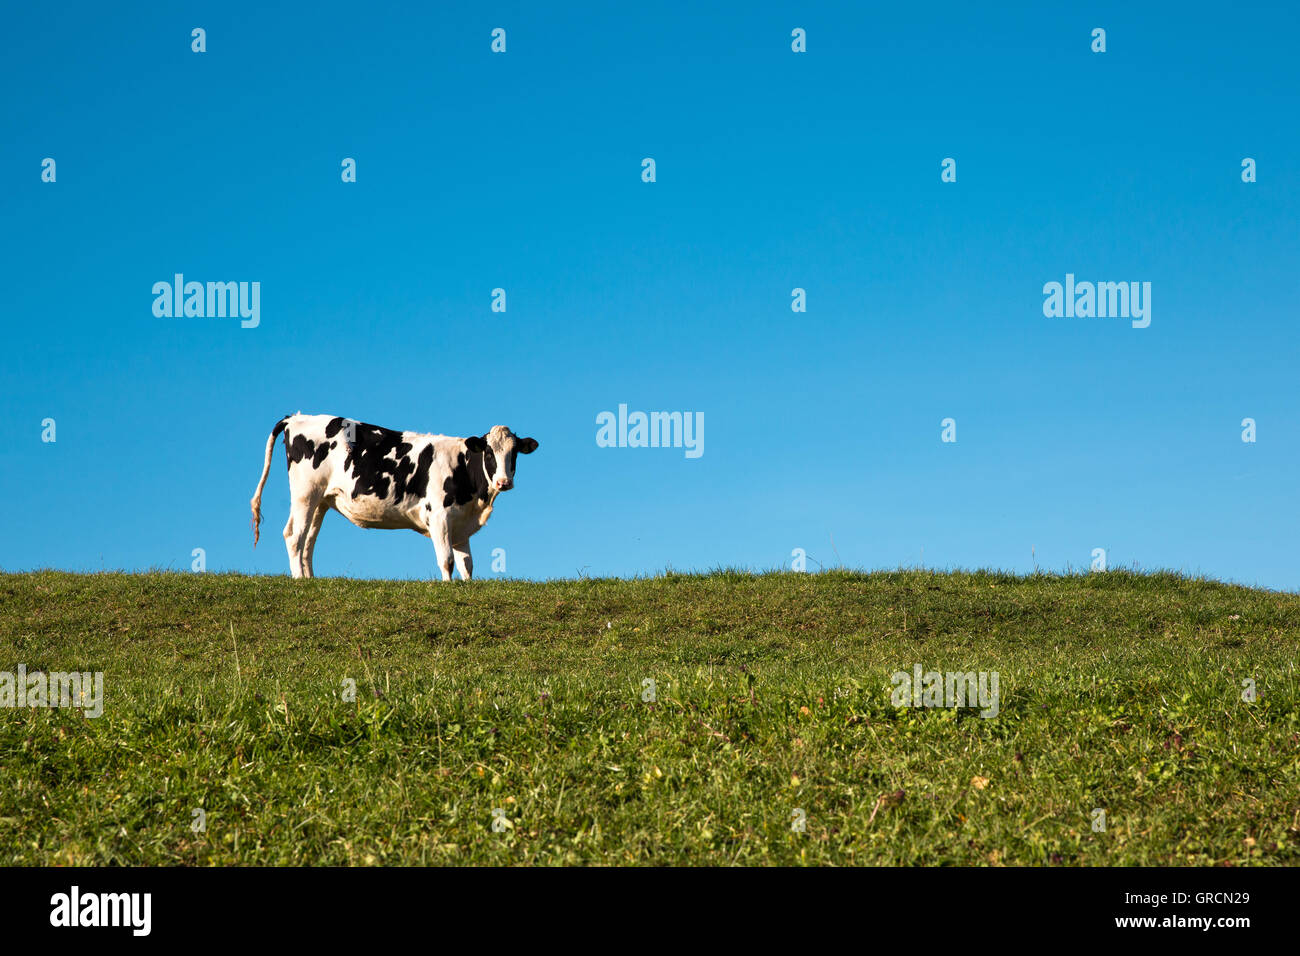 Eine Kuh vor einem blauen Himmel auf grüner Wiese Stockfoto